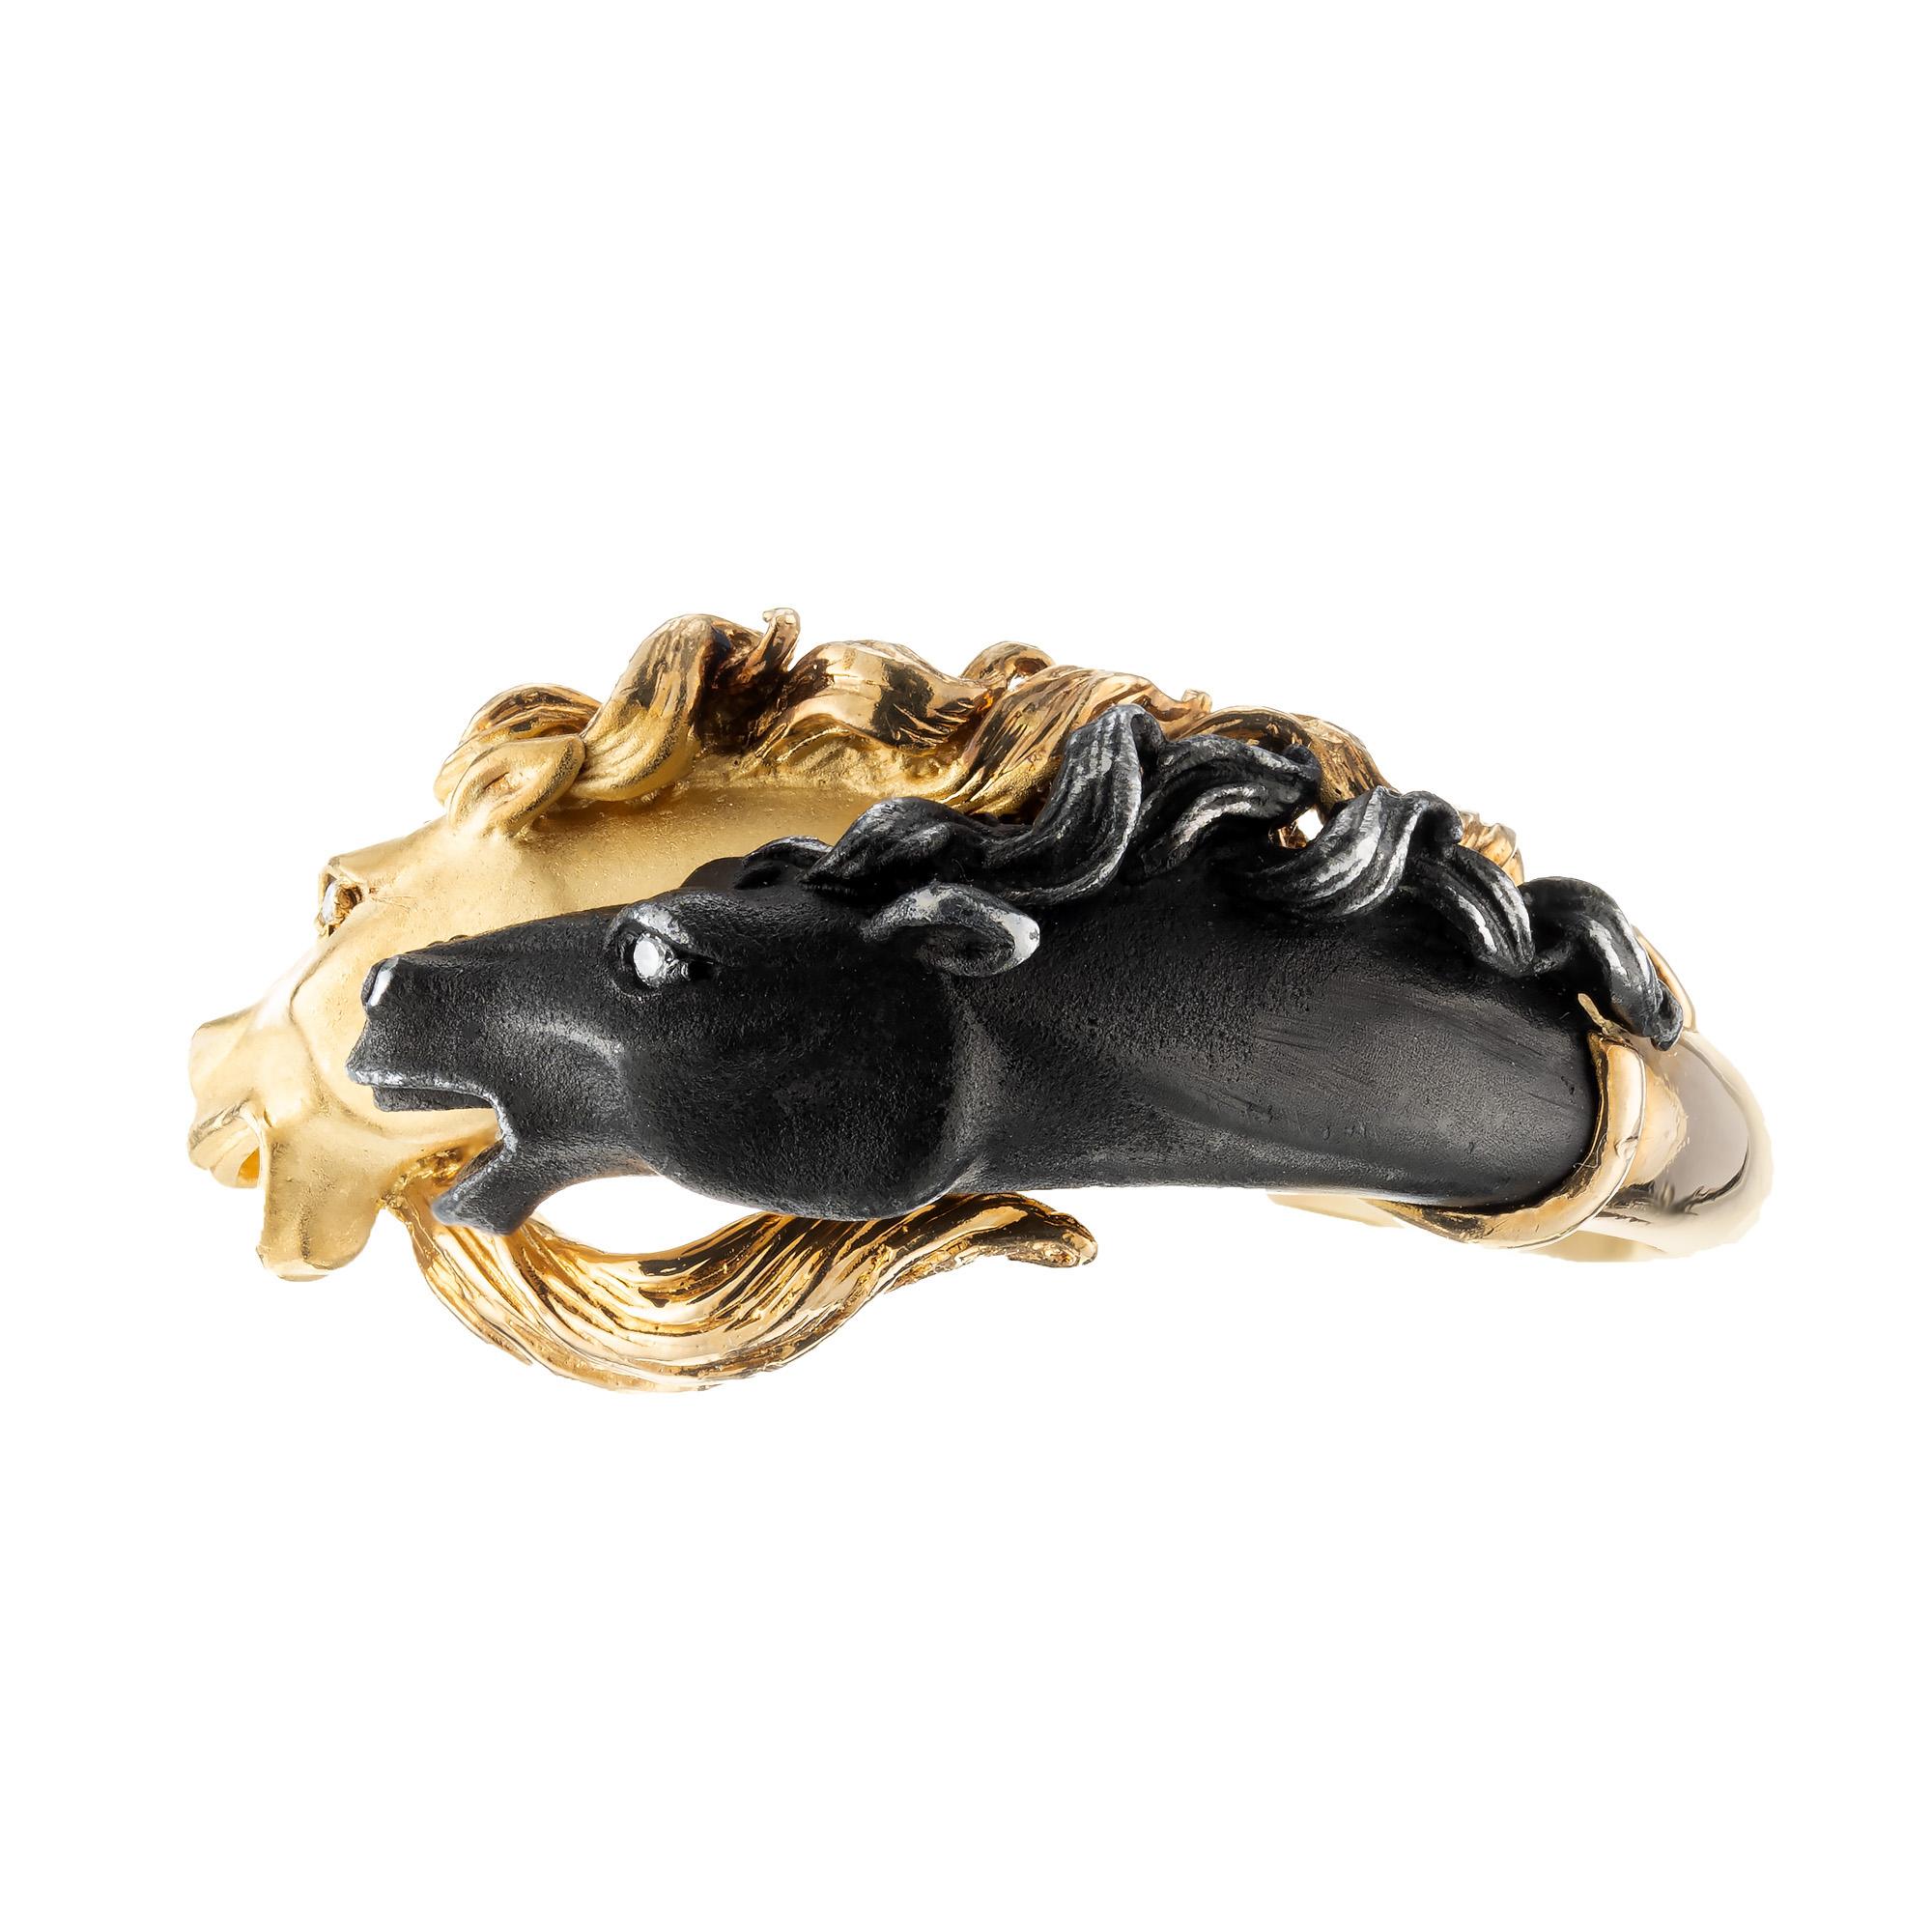 Aus der Carrera y Carrera Pferdekollektion stammt dieser Ring mit doppeltem Pferdekopf aus 18k Gelbgold und dunklem Finish mit 2 Diamantaugen. Größe 12. Werkseitige Originallackierung auf einem Kopf nachgedunkelt. 

2 runde Diamanten im